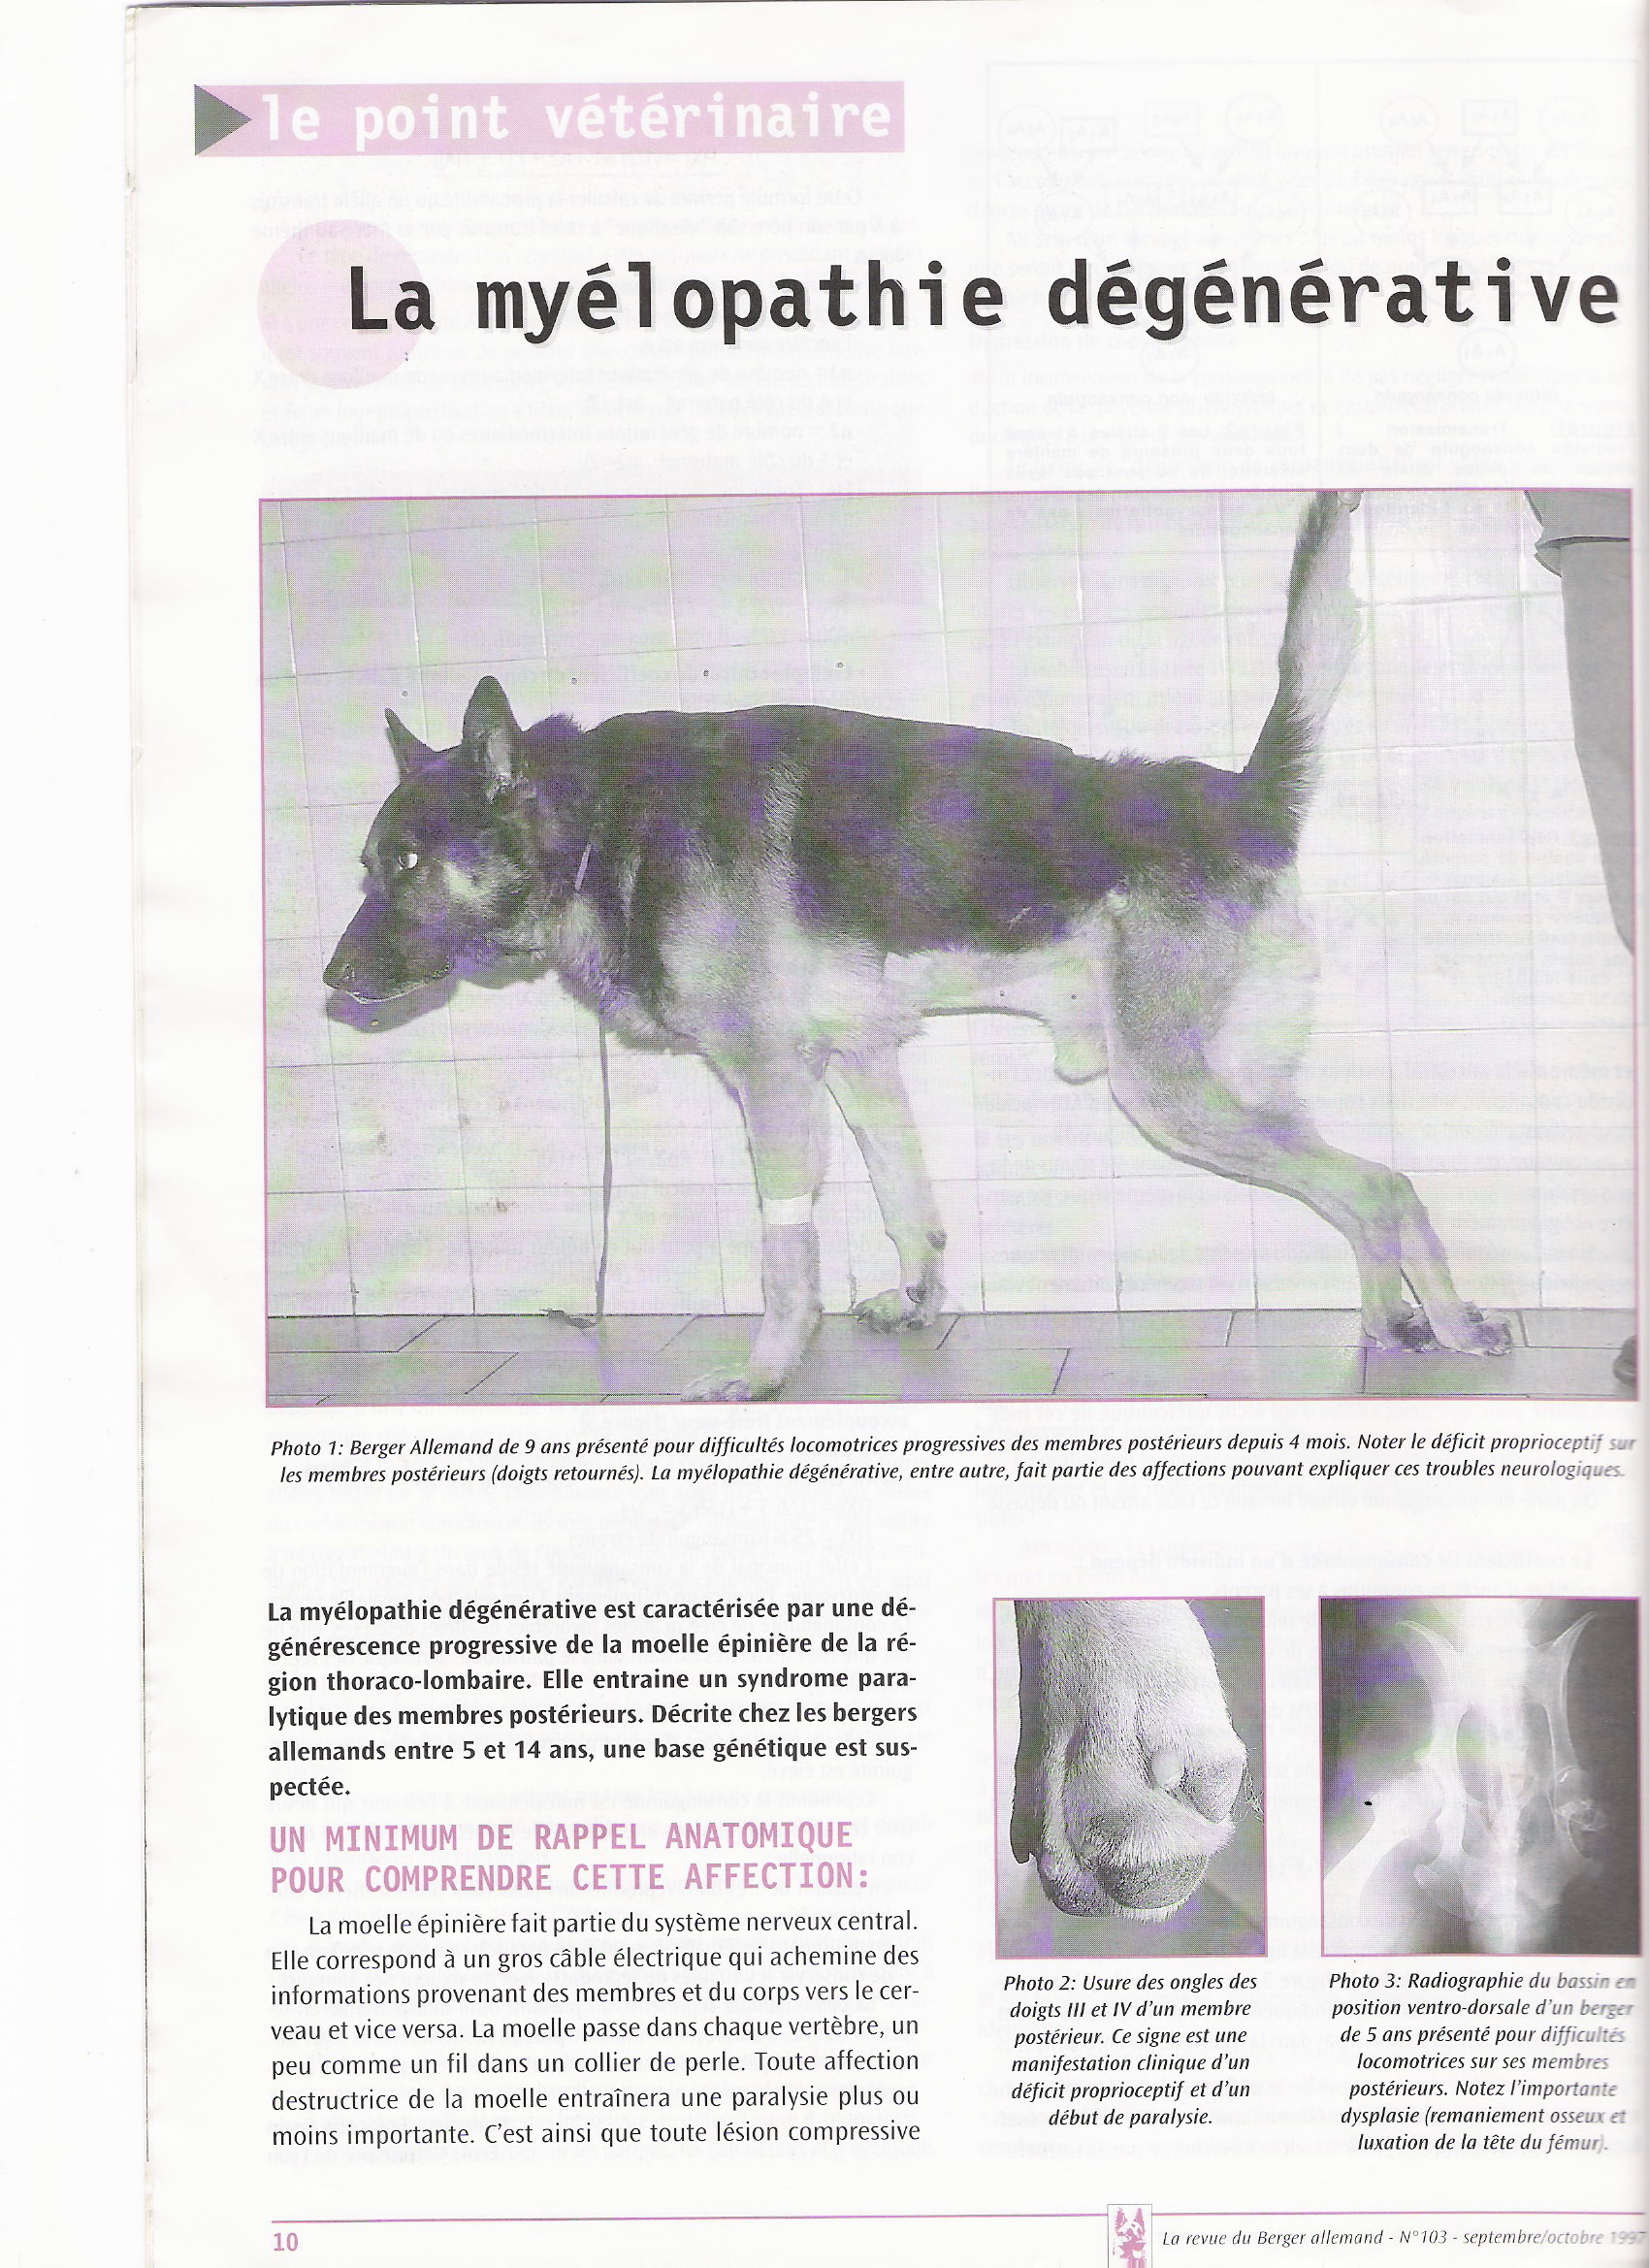 Myélopathie dégénérative du chien - dépistage - Infos ? Mielopathie1